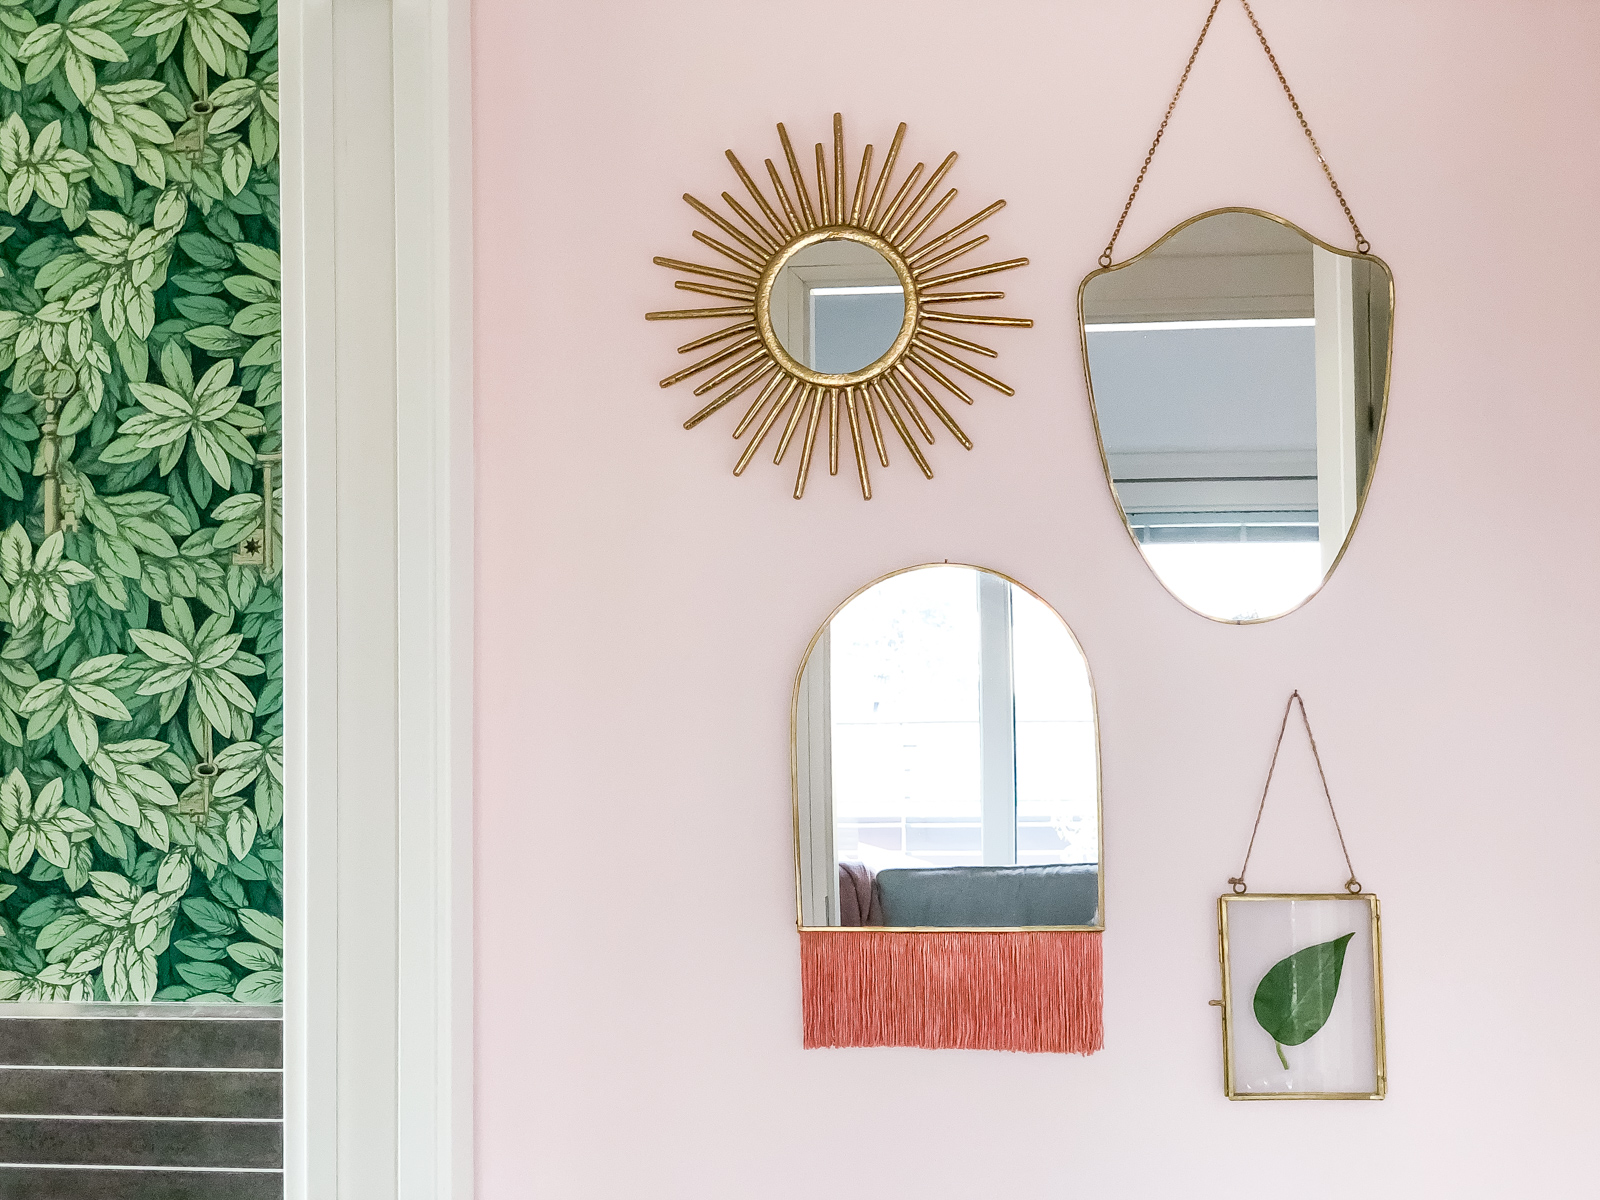 Specchi Ikea: 10 idee originali per decorare la casa